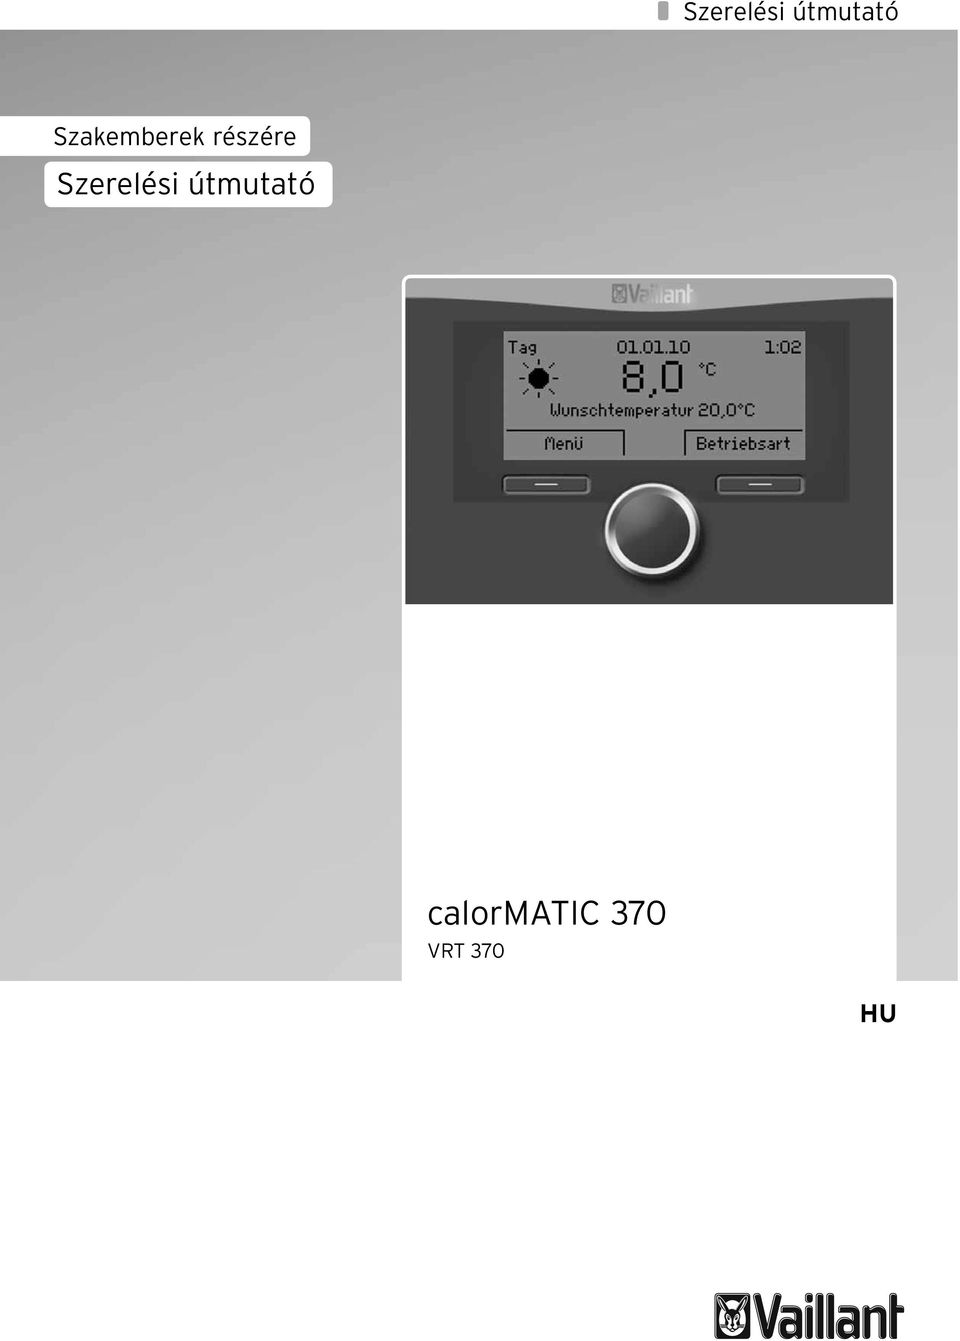 calormatic 370 VRT